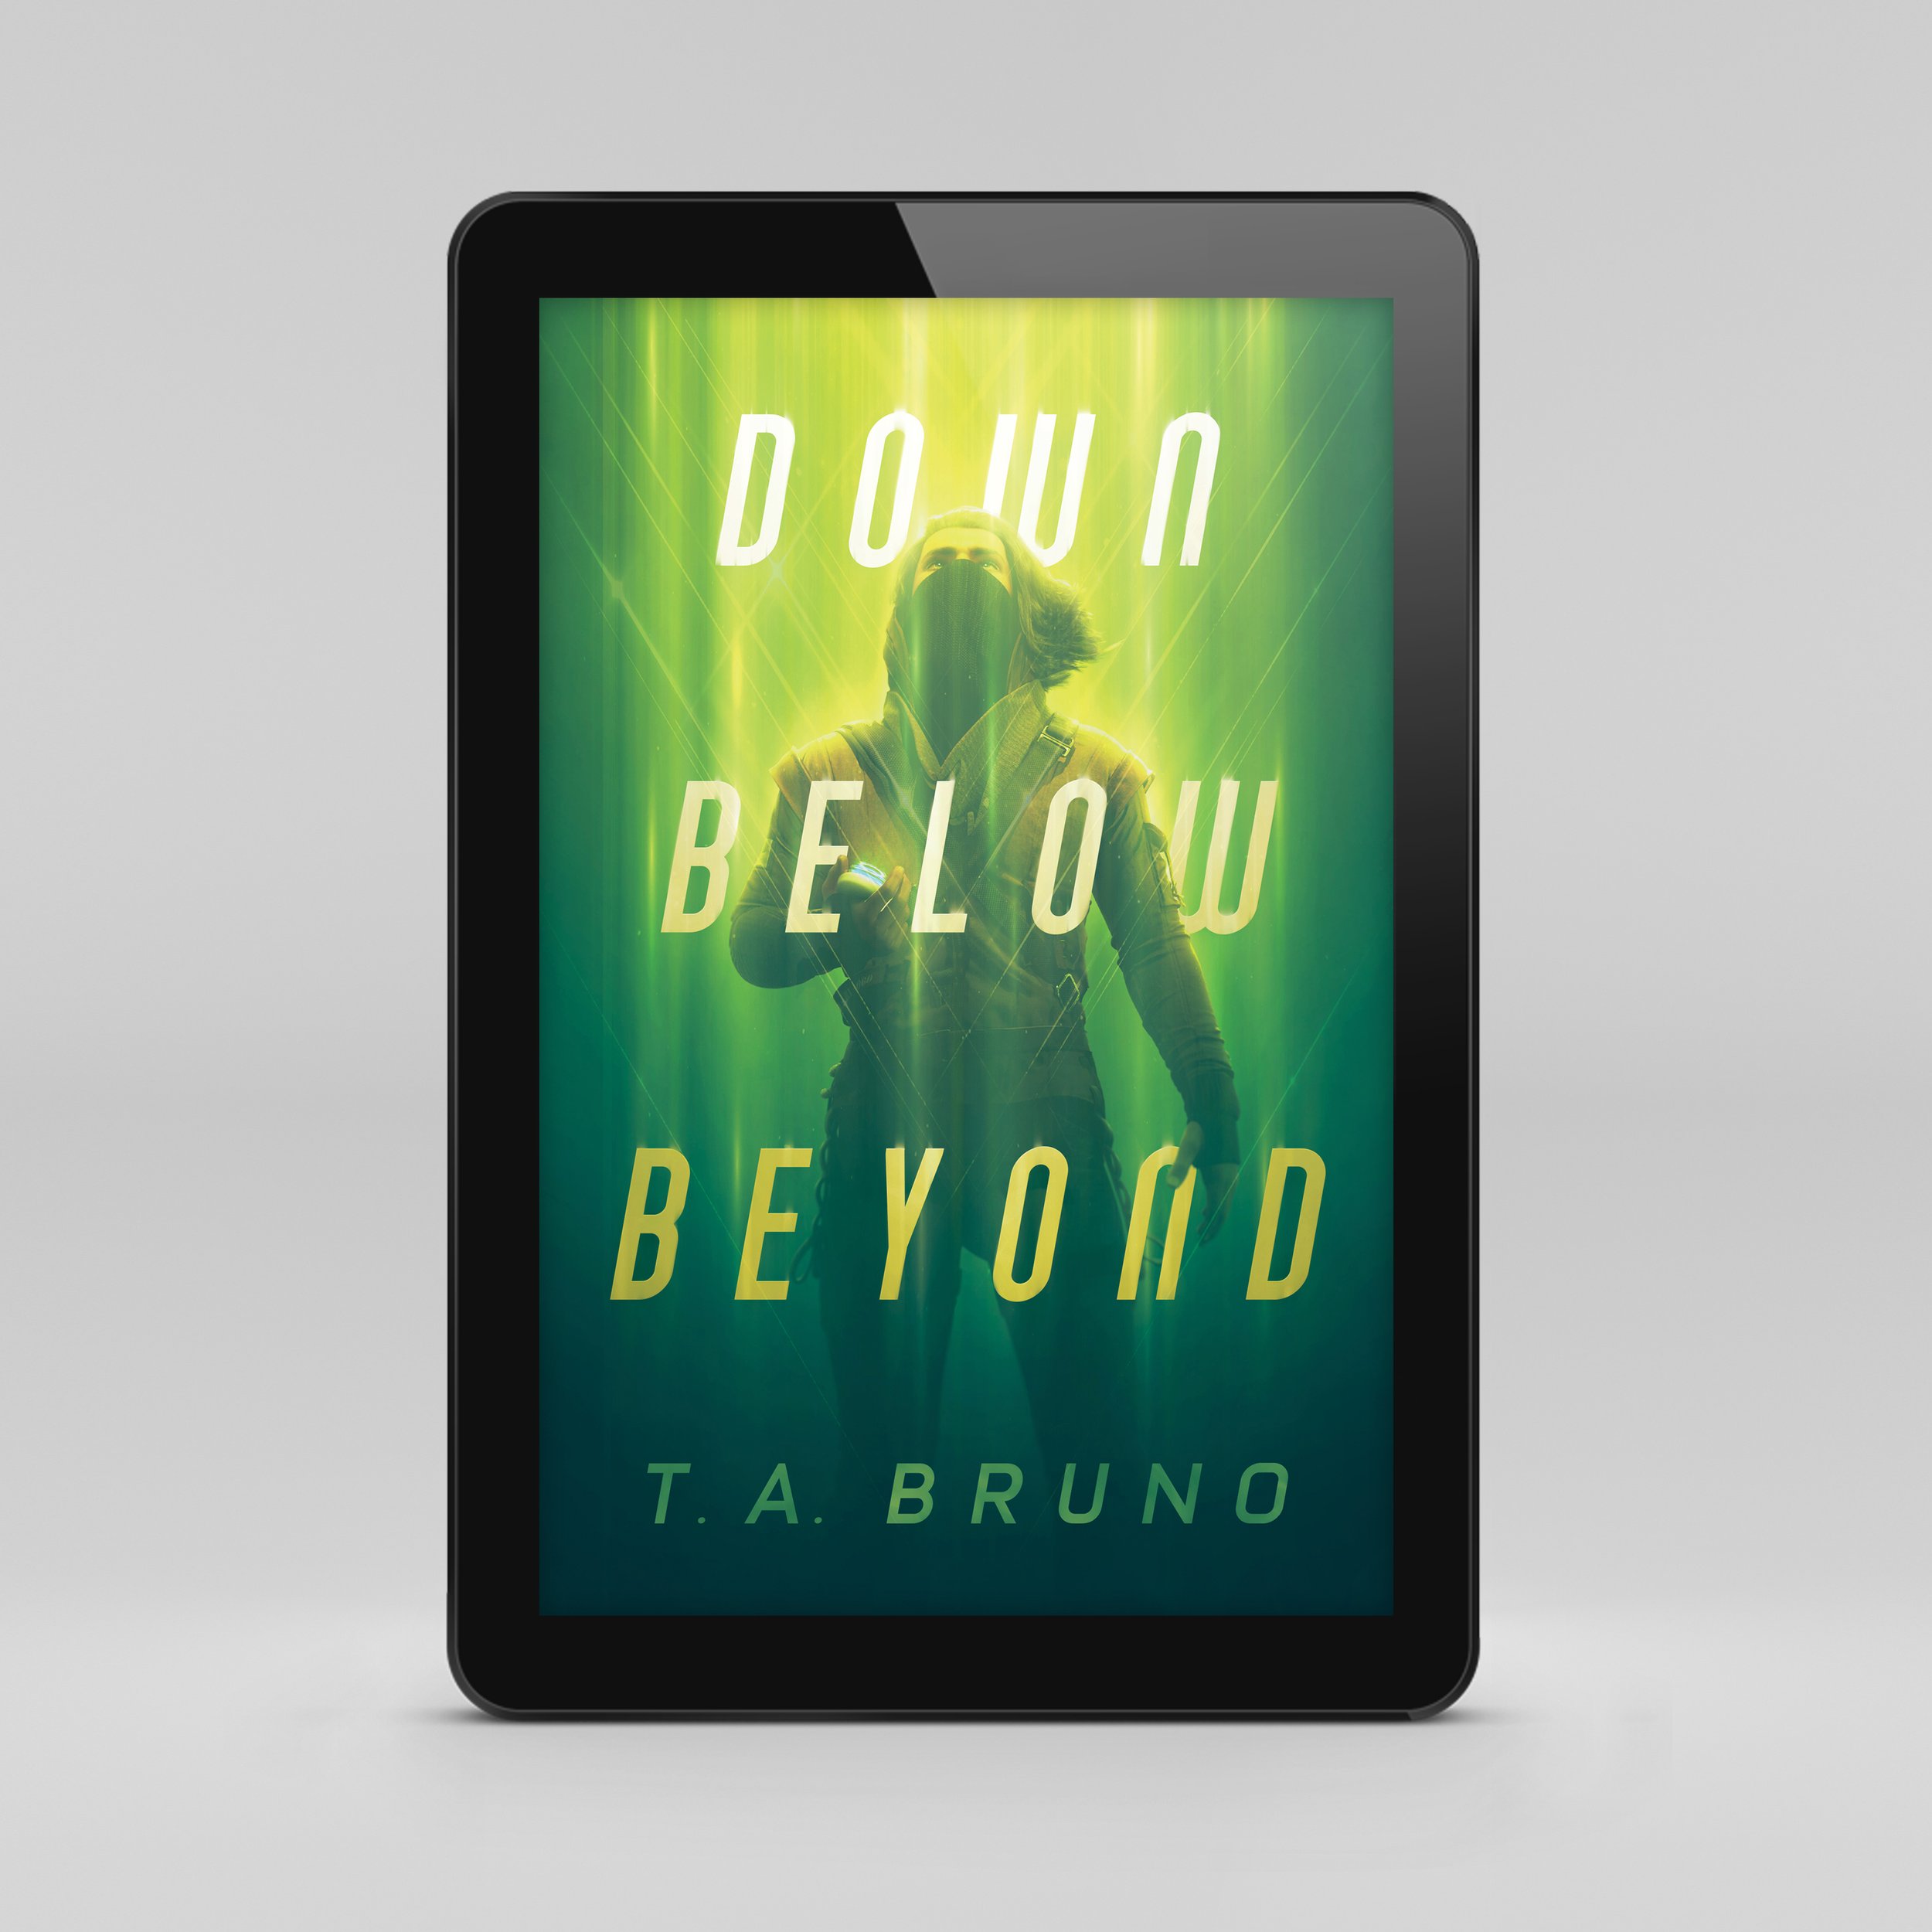 Cover - Down Below Beyond (ebook mockup).jpg